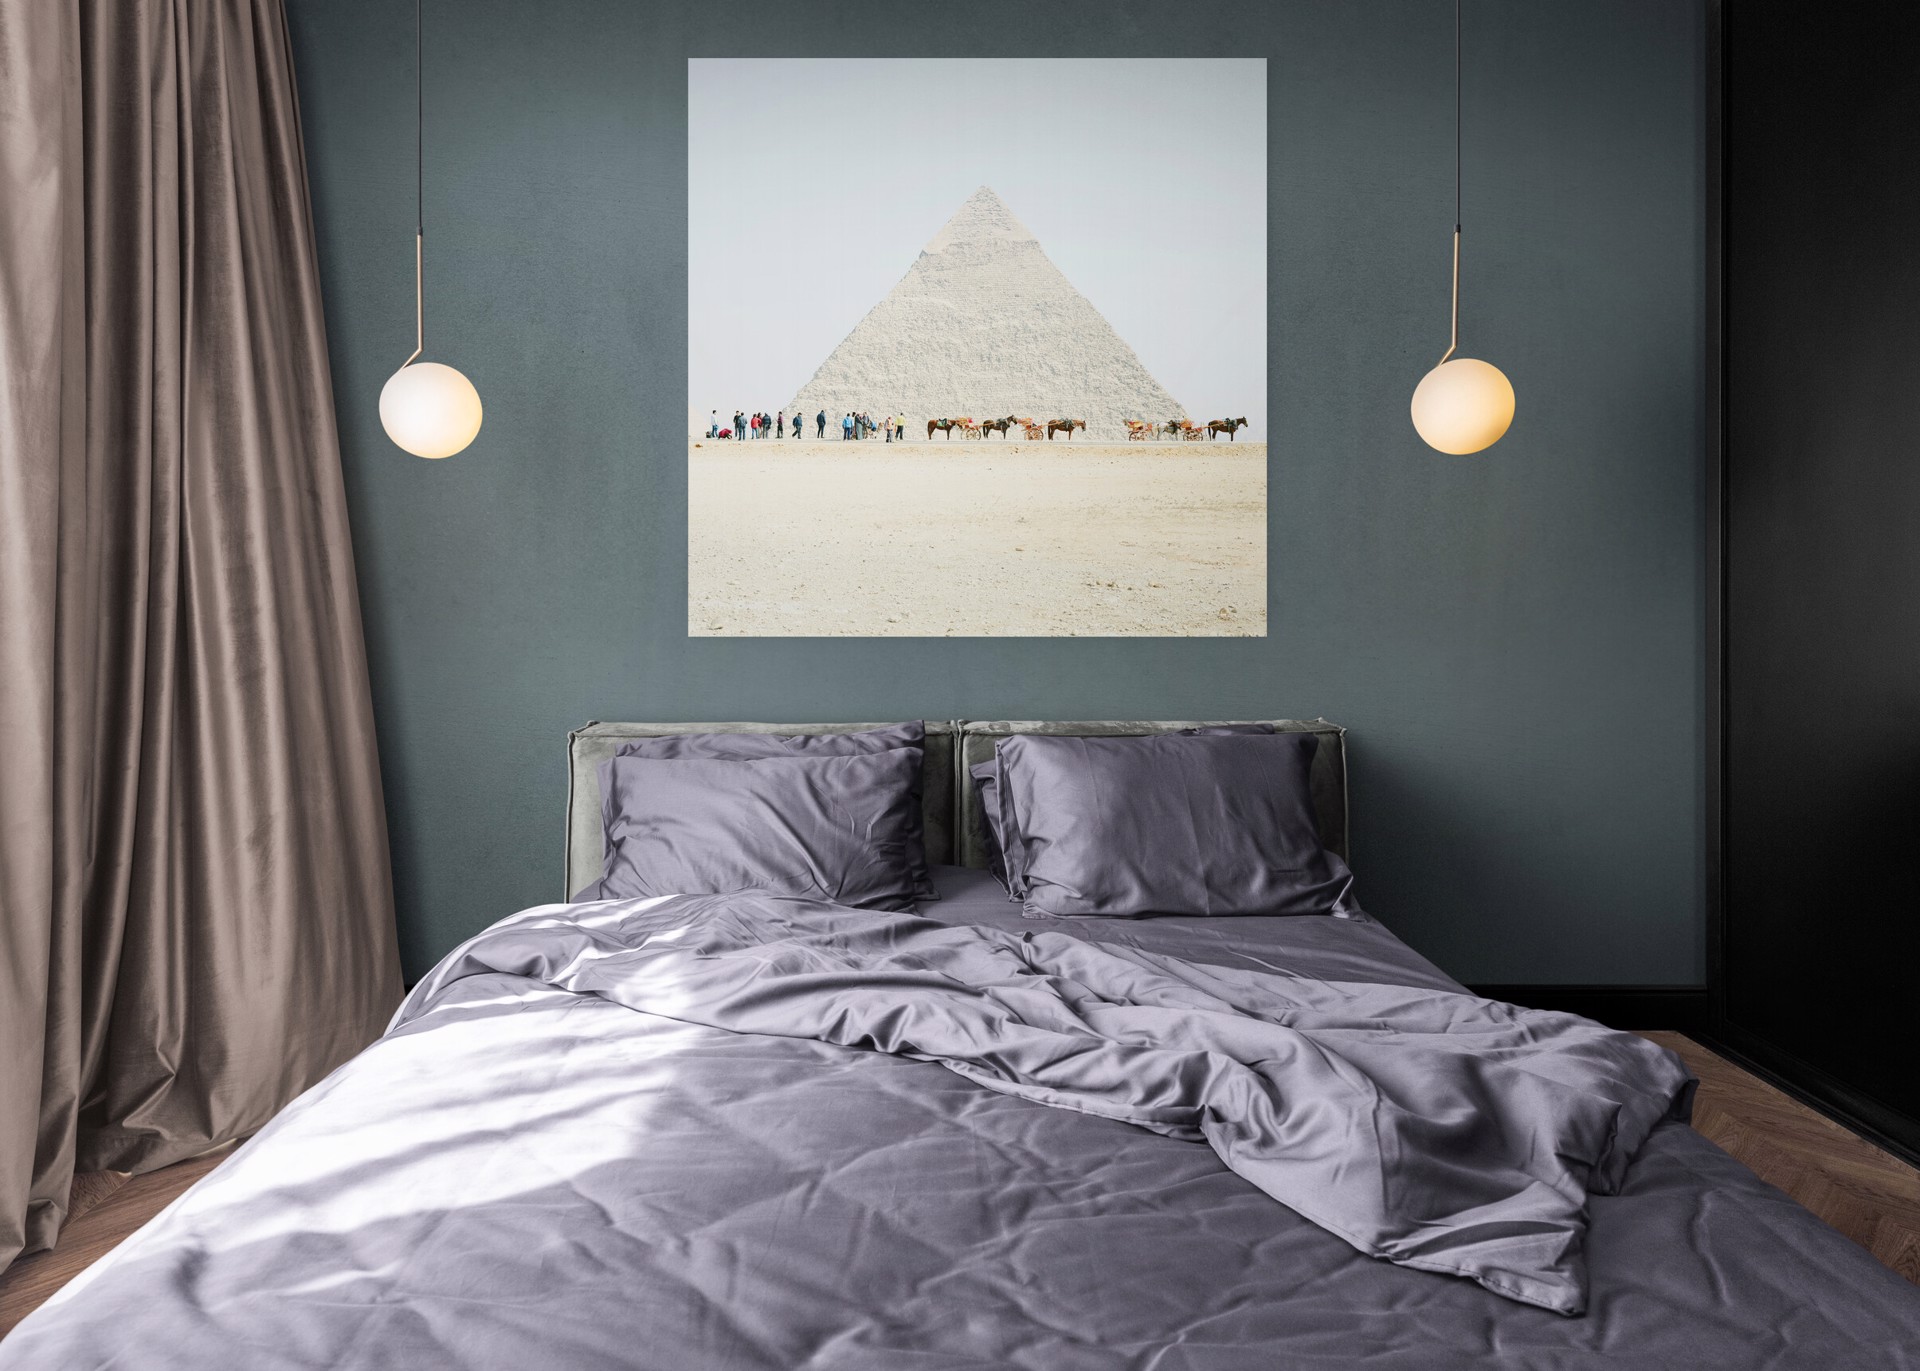 Khufu with Horses, Giza, Egypt by David Burdeny